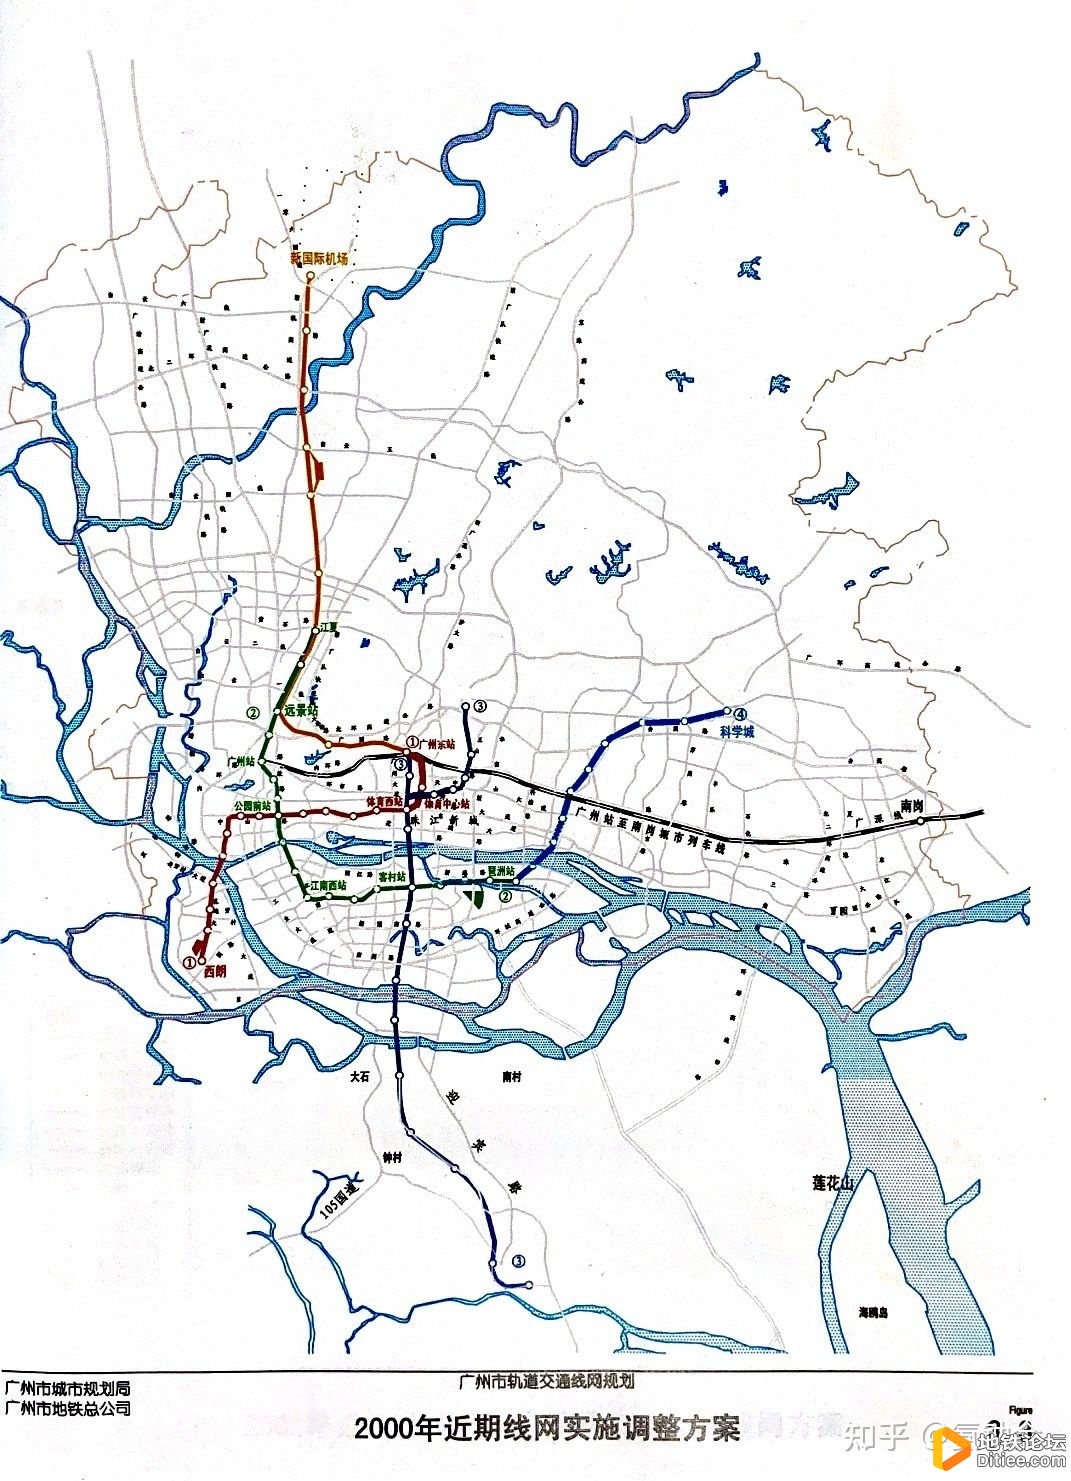 试谈广州地铁3号线的规划发展历程（上）